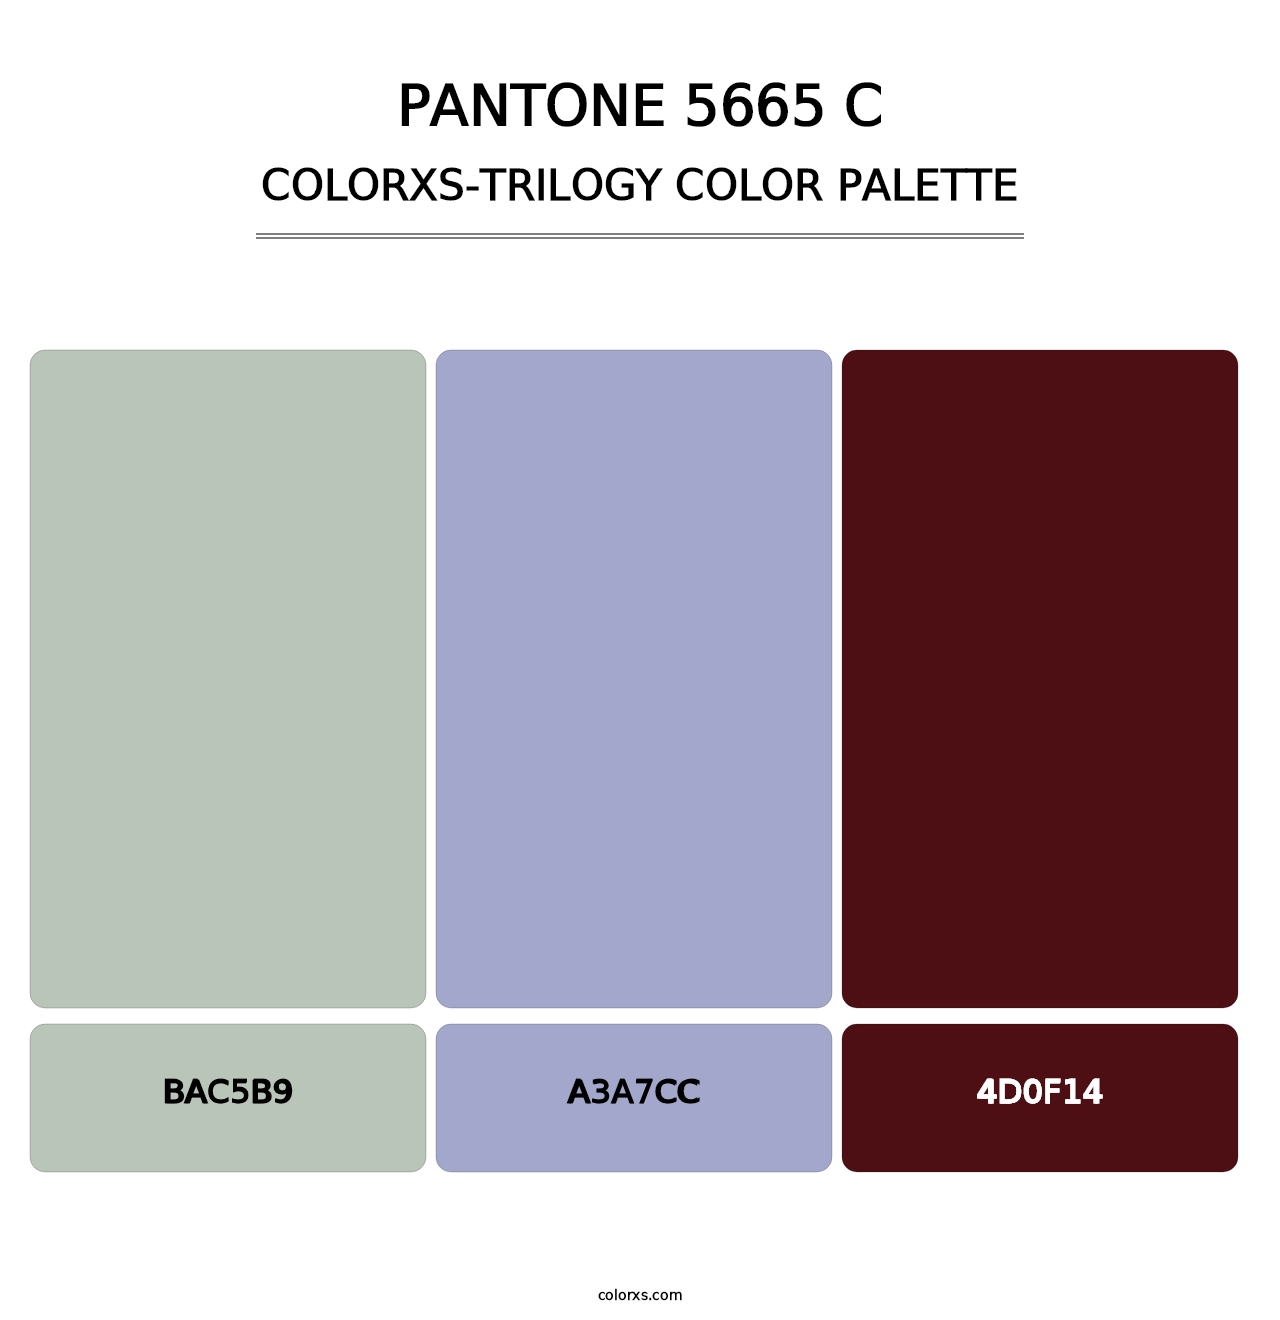 PANTONE 5665 C - Colorxs Trilogy Palette